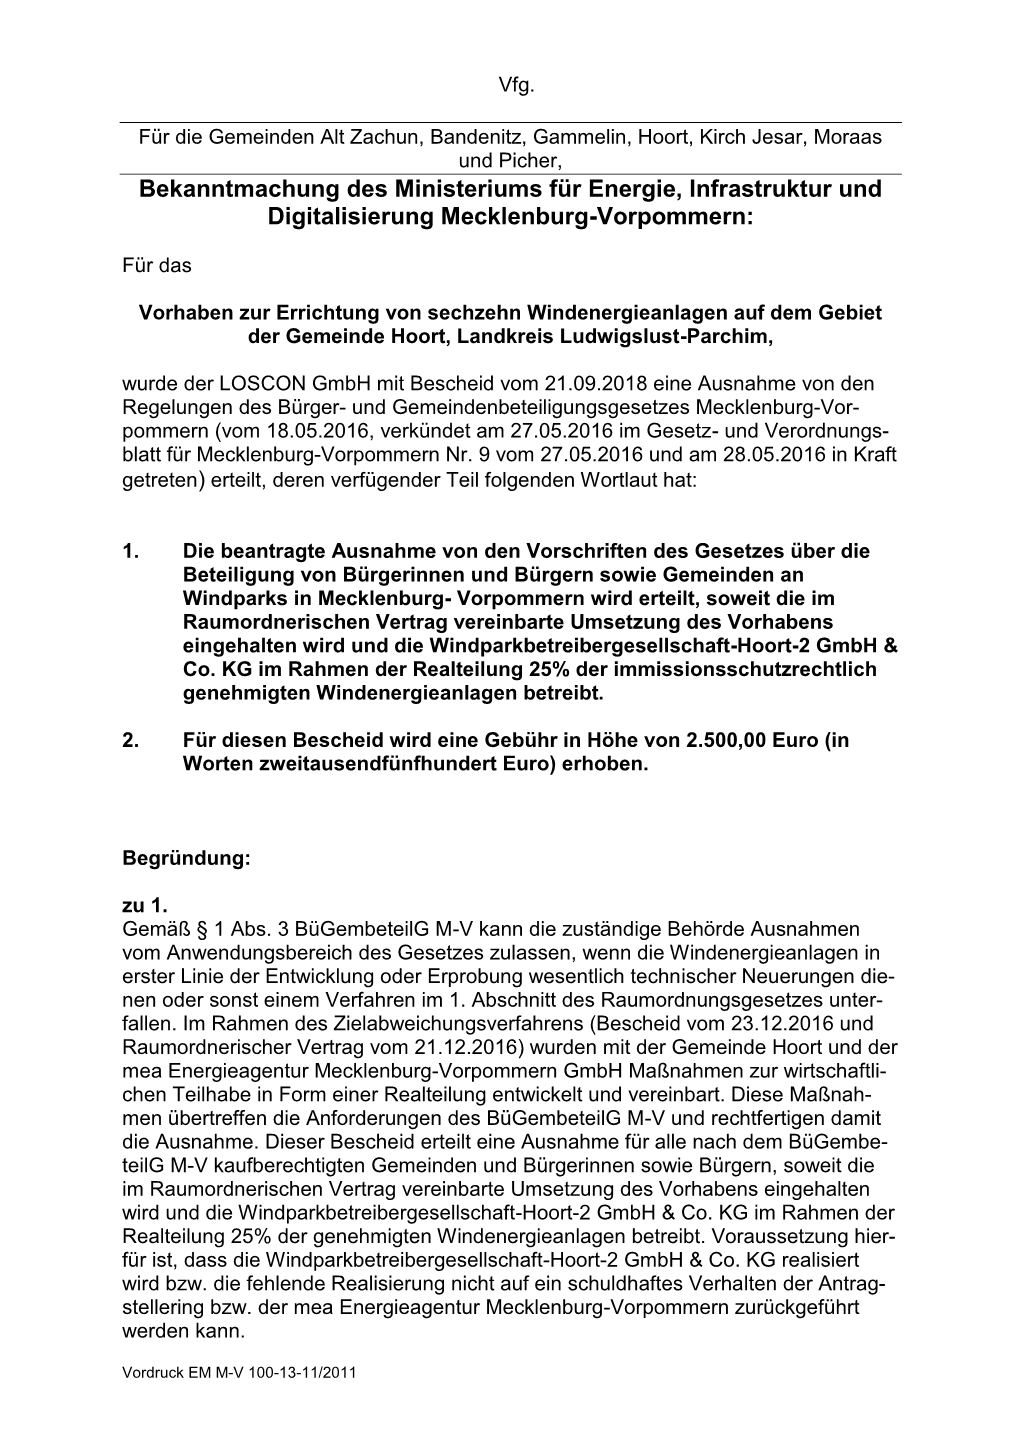 Bekanntmachung Des Ministeriums Für Energie, Infrastruktur Und Digitalisierung Mecklenburg-Vorpommern